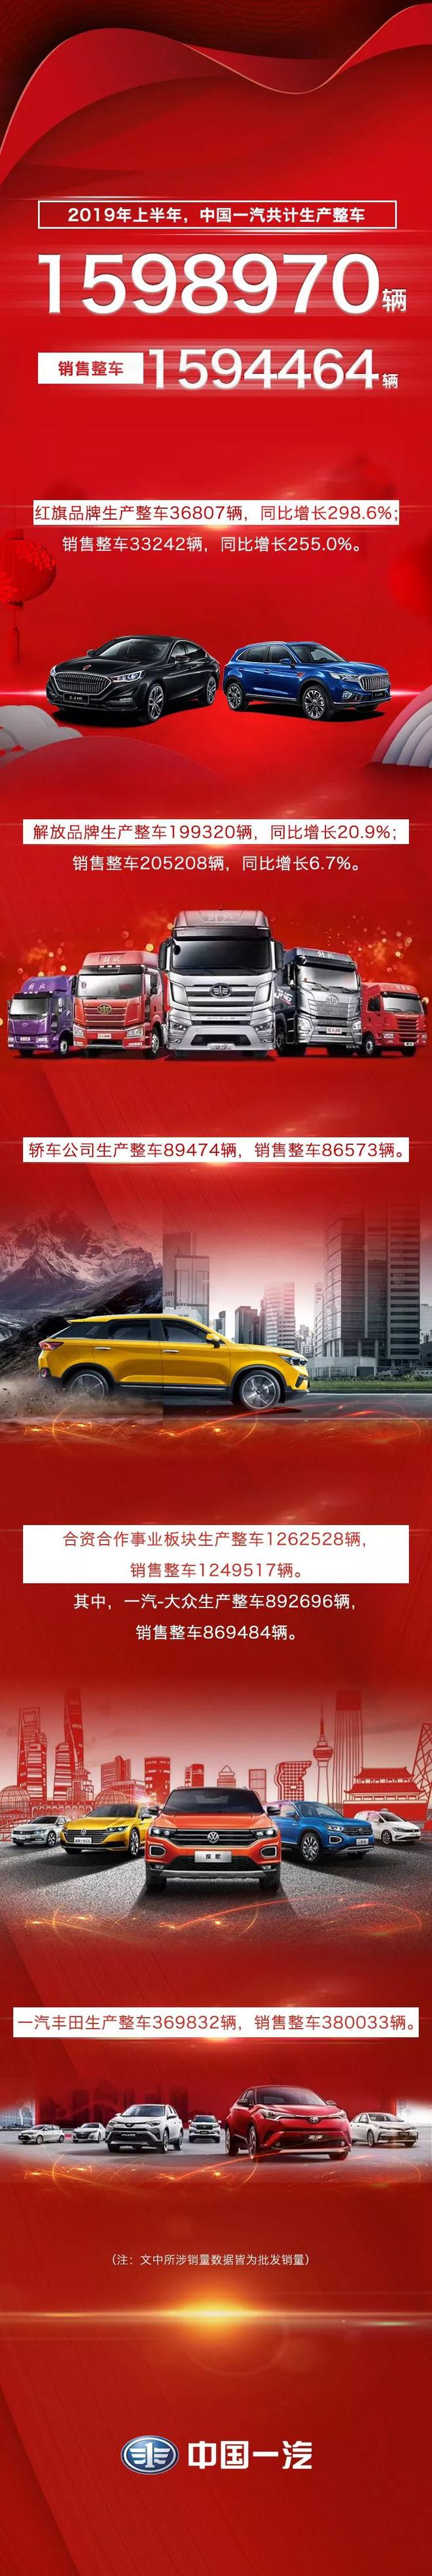 中国一汽上半年销售整车1594464辆